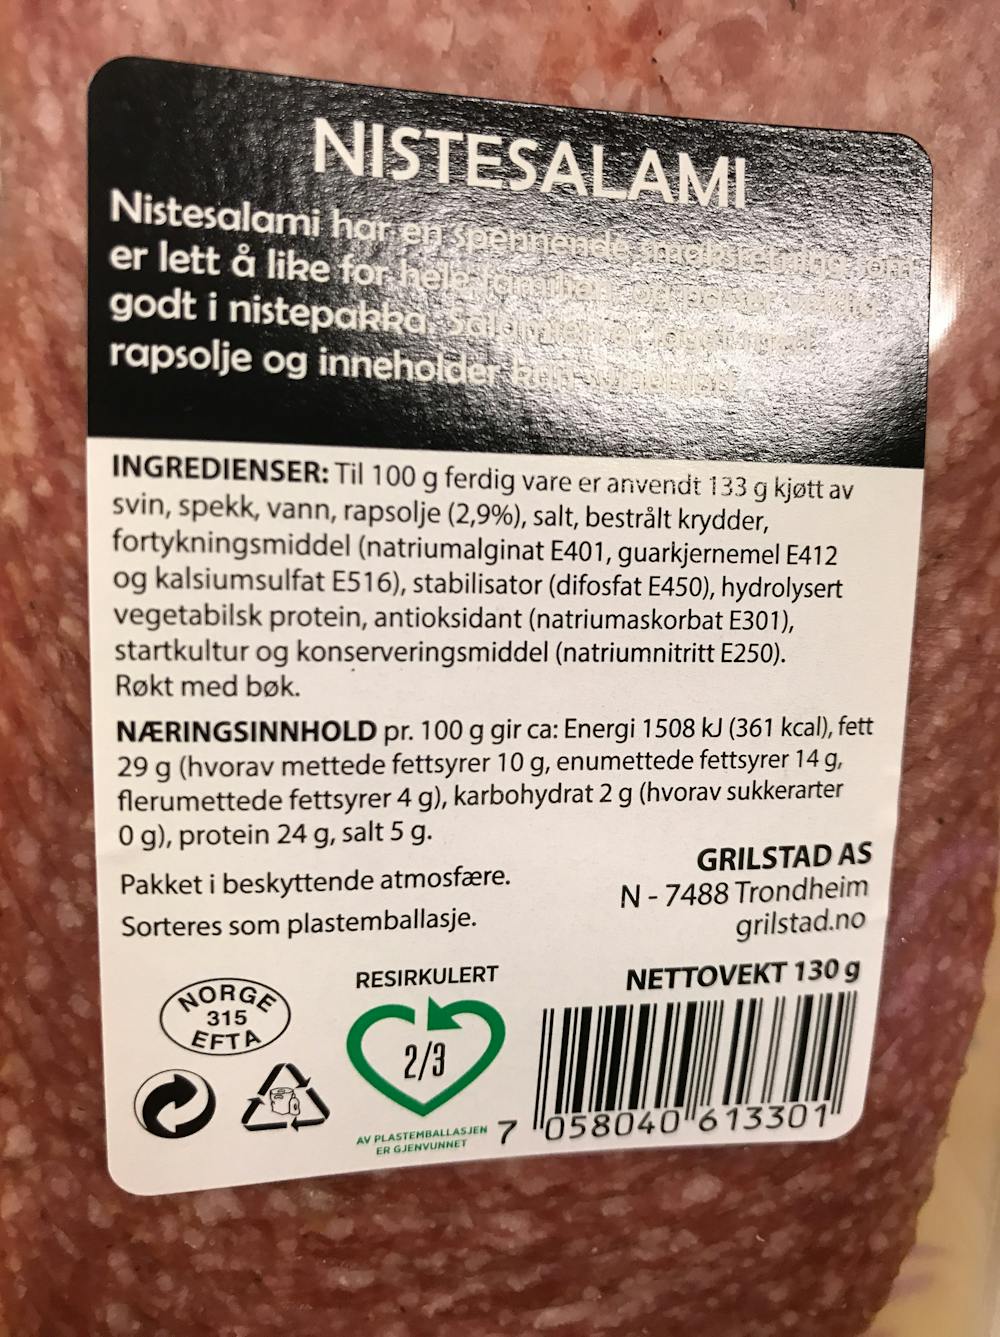 Ingredienslisten til Nistesalami, Grilstad